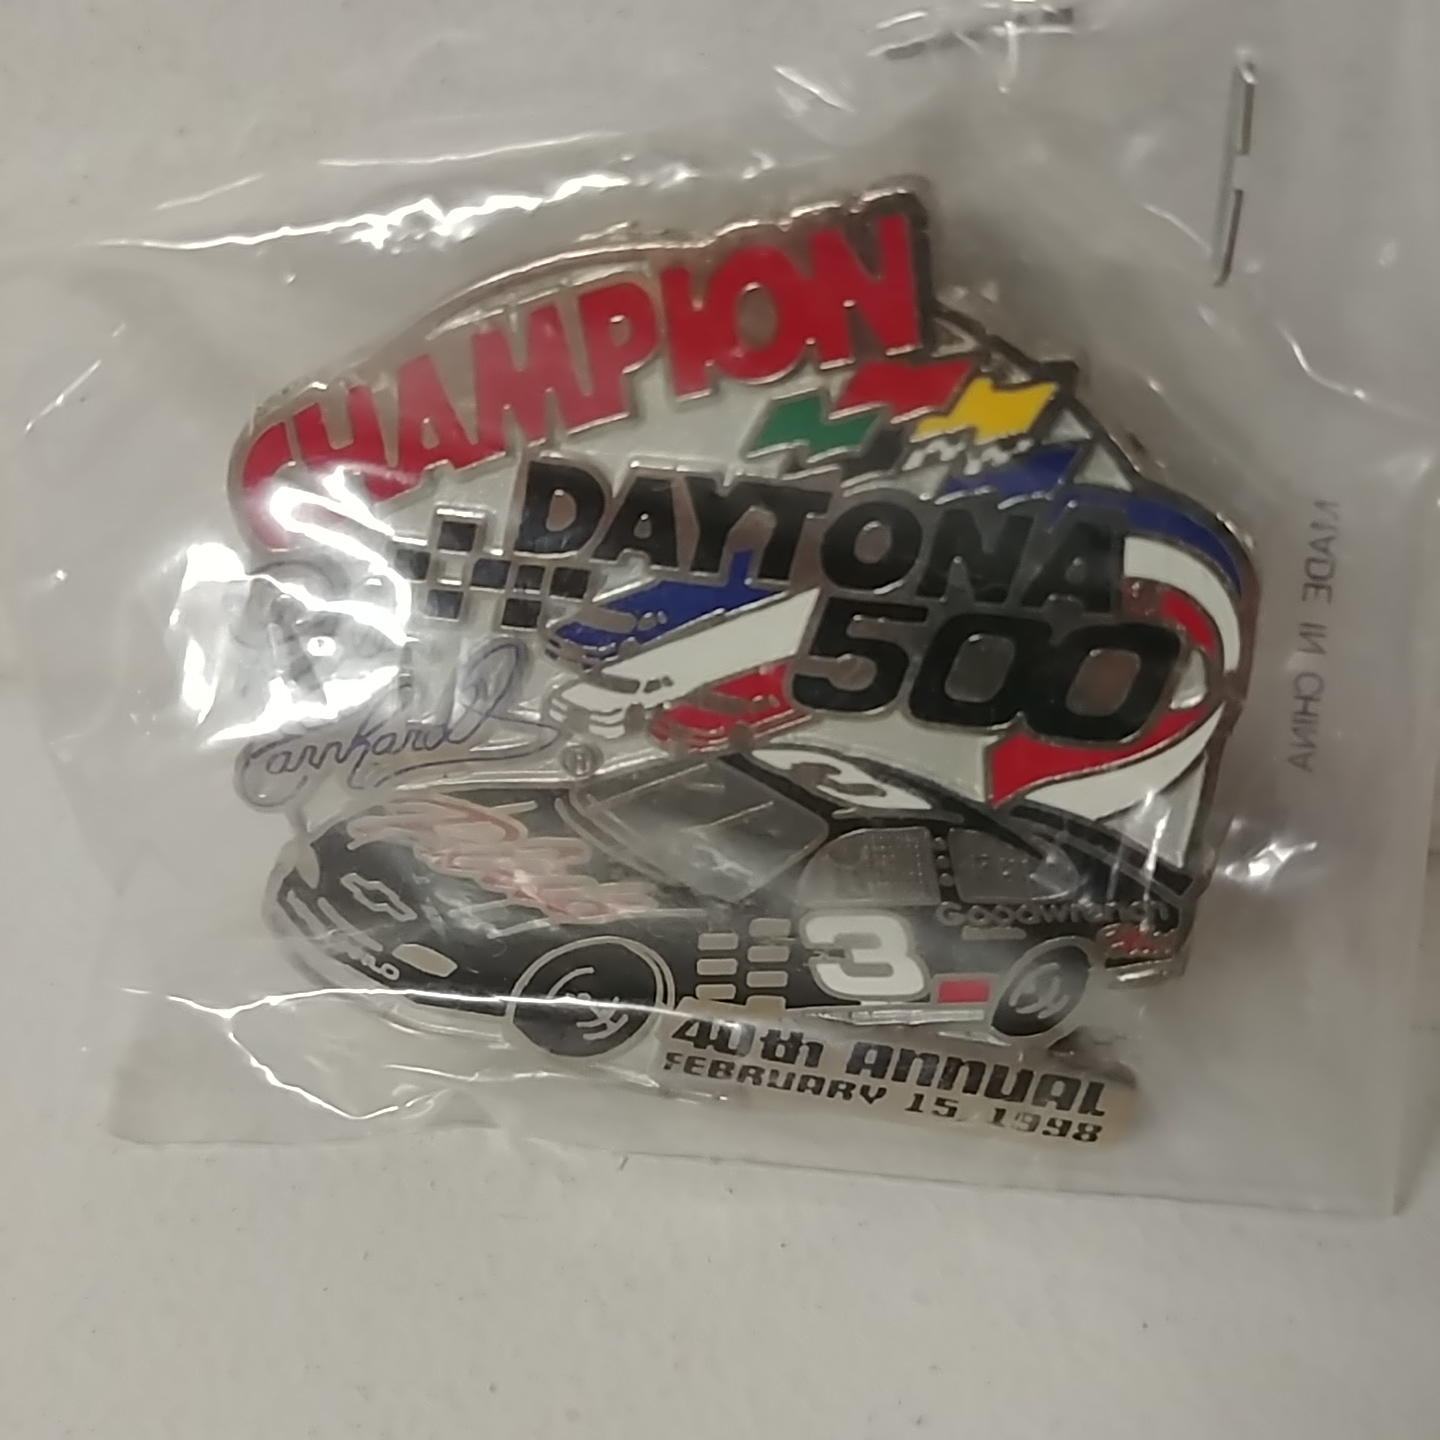 1998 Dale Earnhardt GMGW Plus "Daytona Win" hatpin